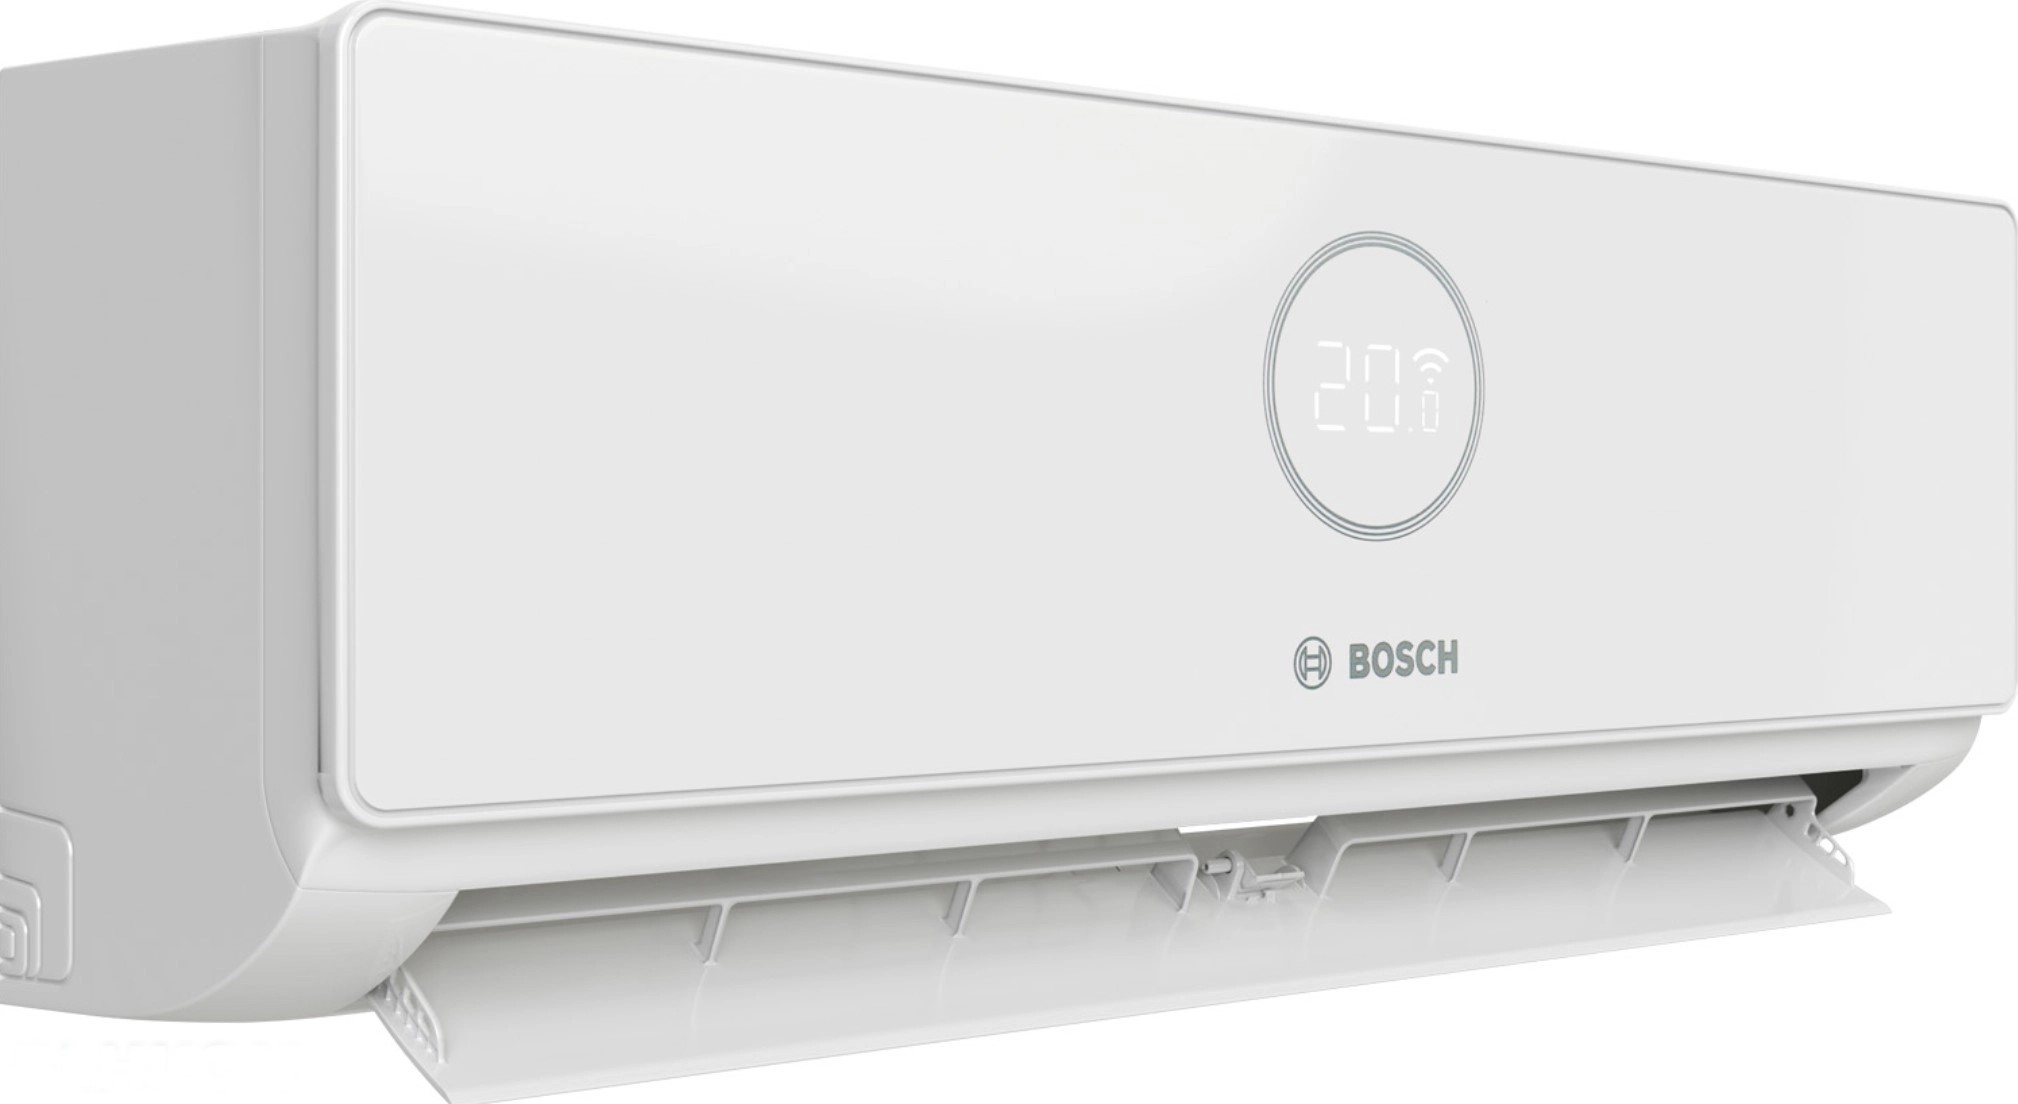 продаём Bosch CL3000i W 20E 2,0 кВт в Украине - фото 4